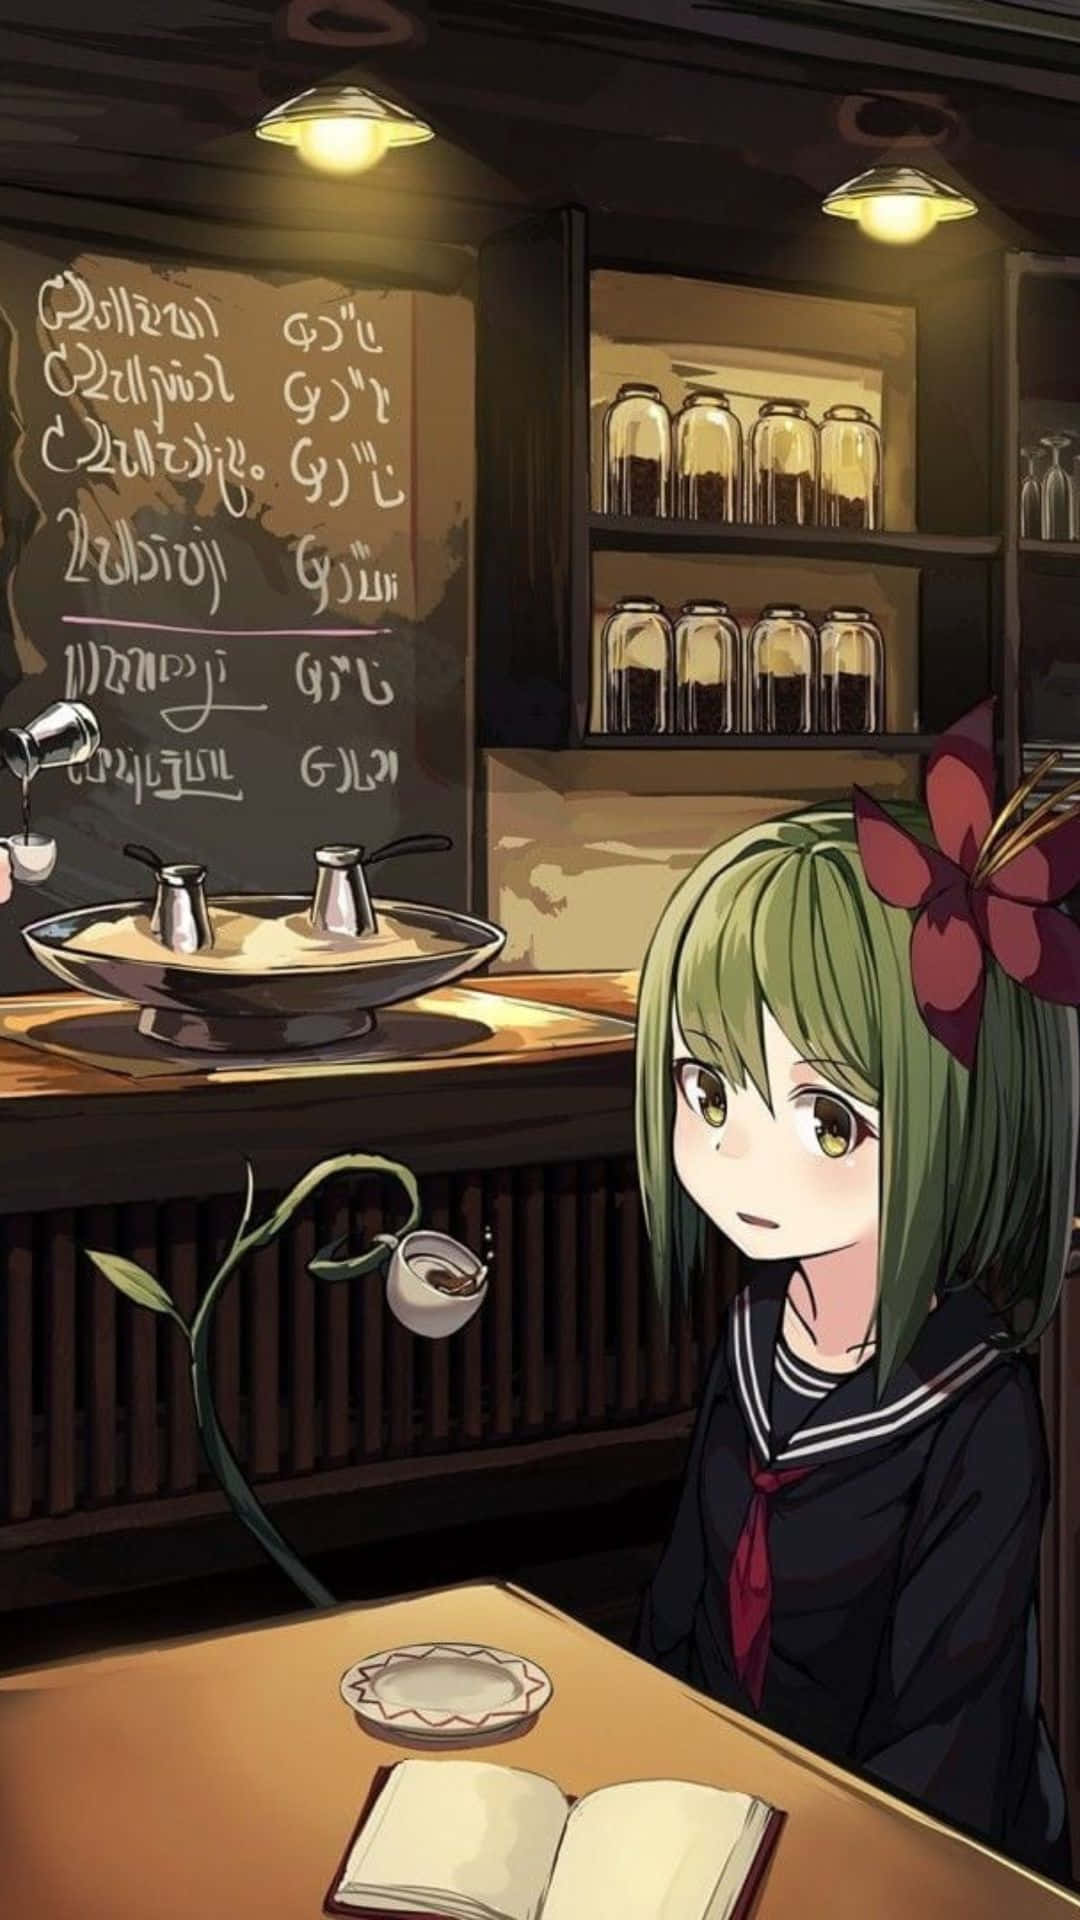 Anime Cafe Background 1080 X 1920 Background